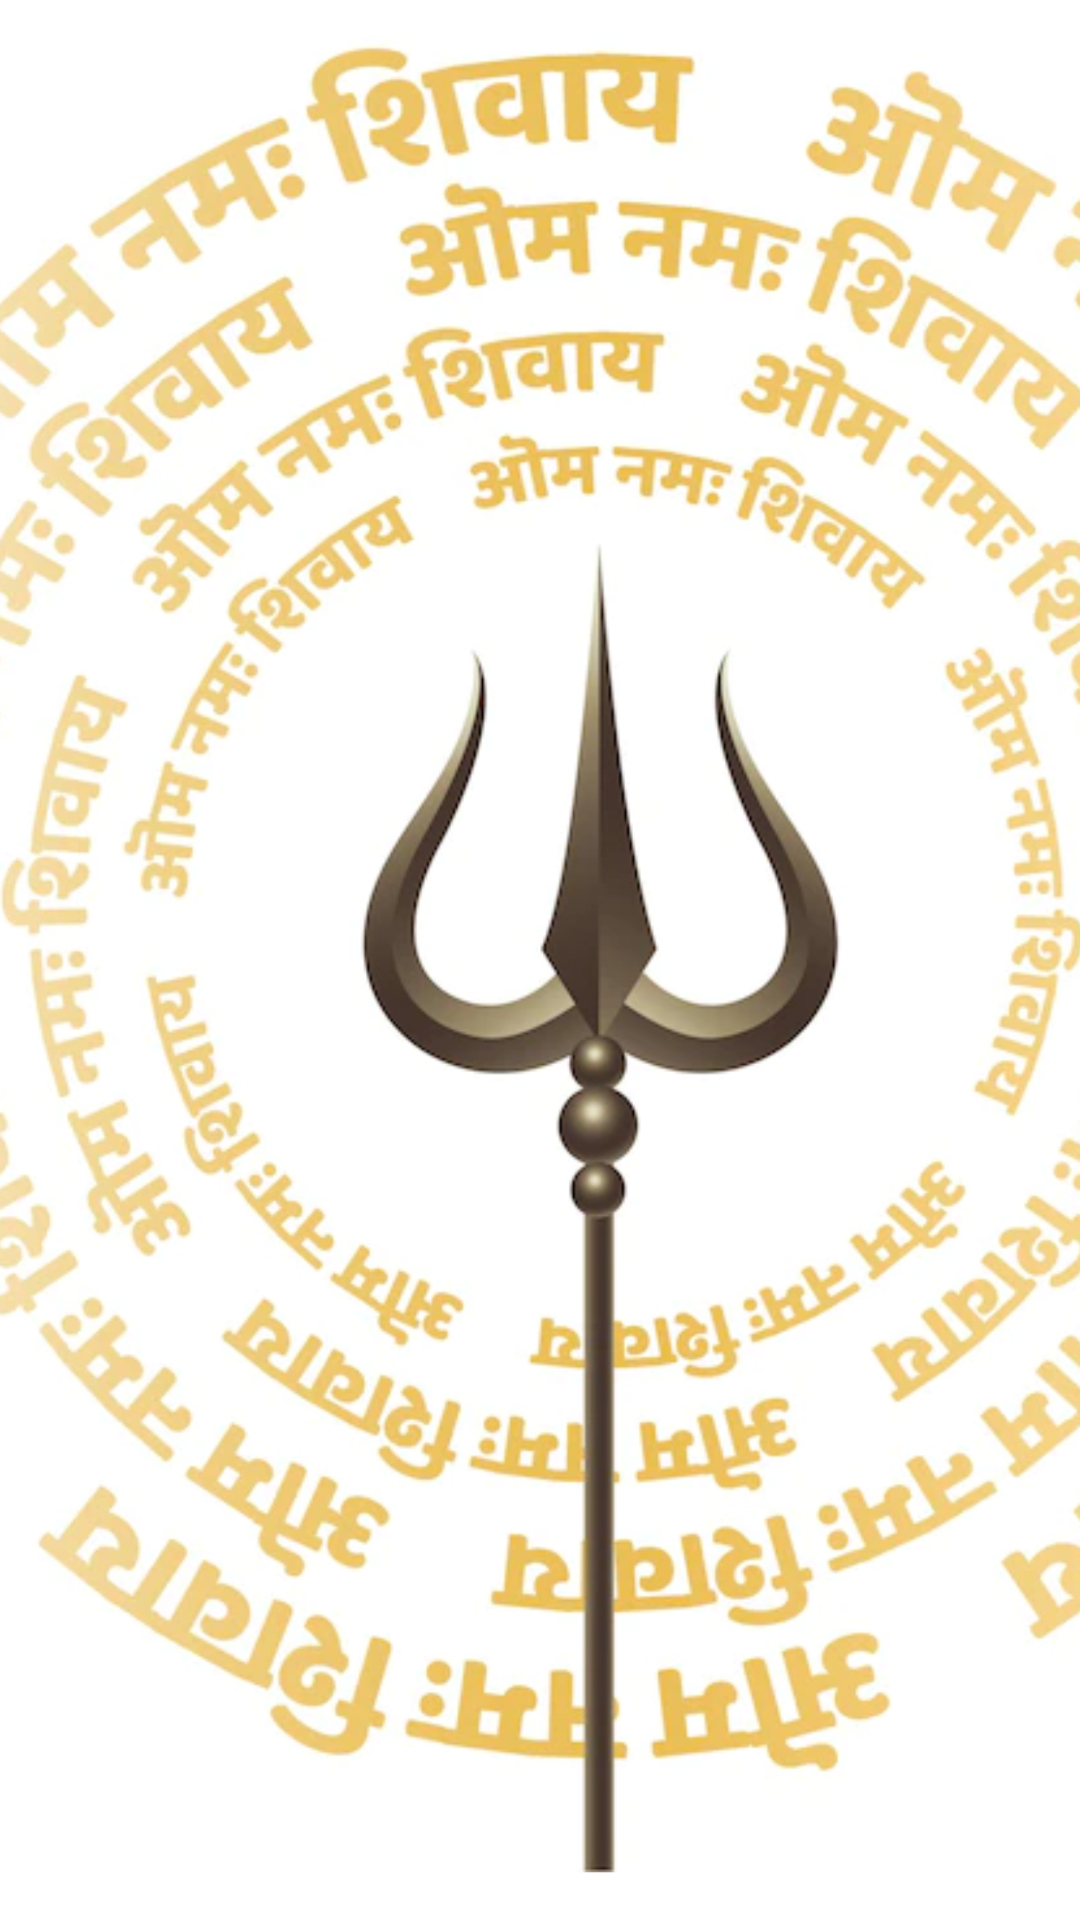 जानिए भगवान शिव के 12 ज्योतिर्लिंग के बारे में